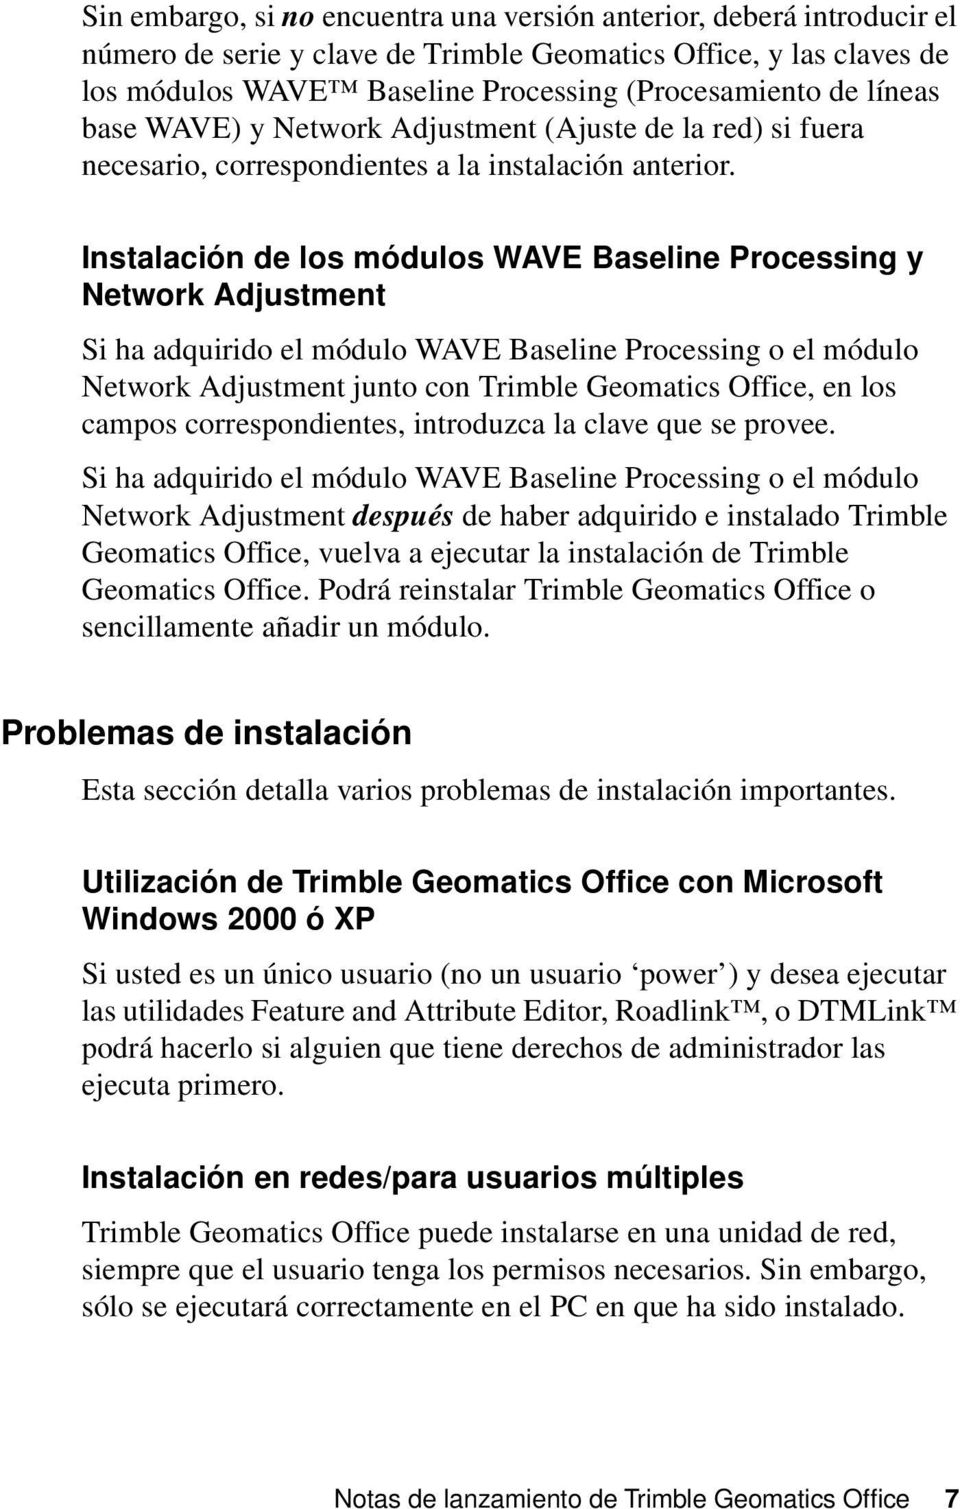 Instalación de los módulos WAVE Baseline Processing y Network Adjustment Si ha adquirido el módulo WAVE Baseline Processing o el módulo Network Adjustment junto con Trimble Geomatics Office, en los